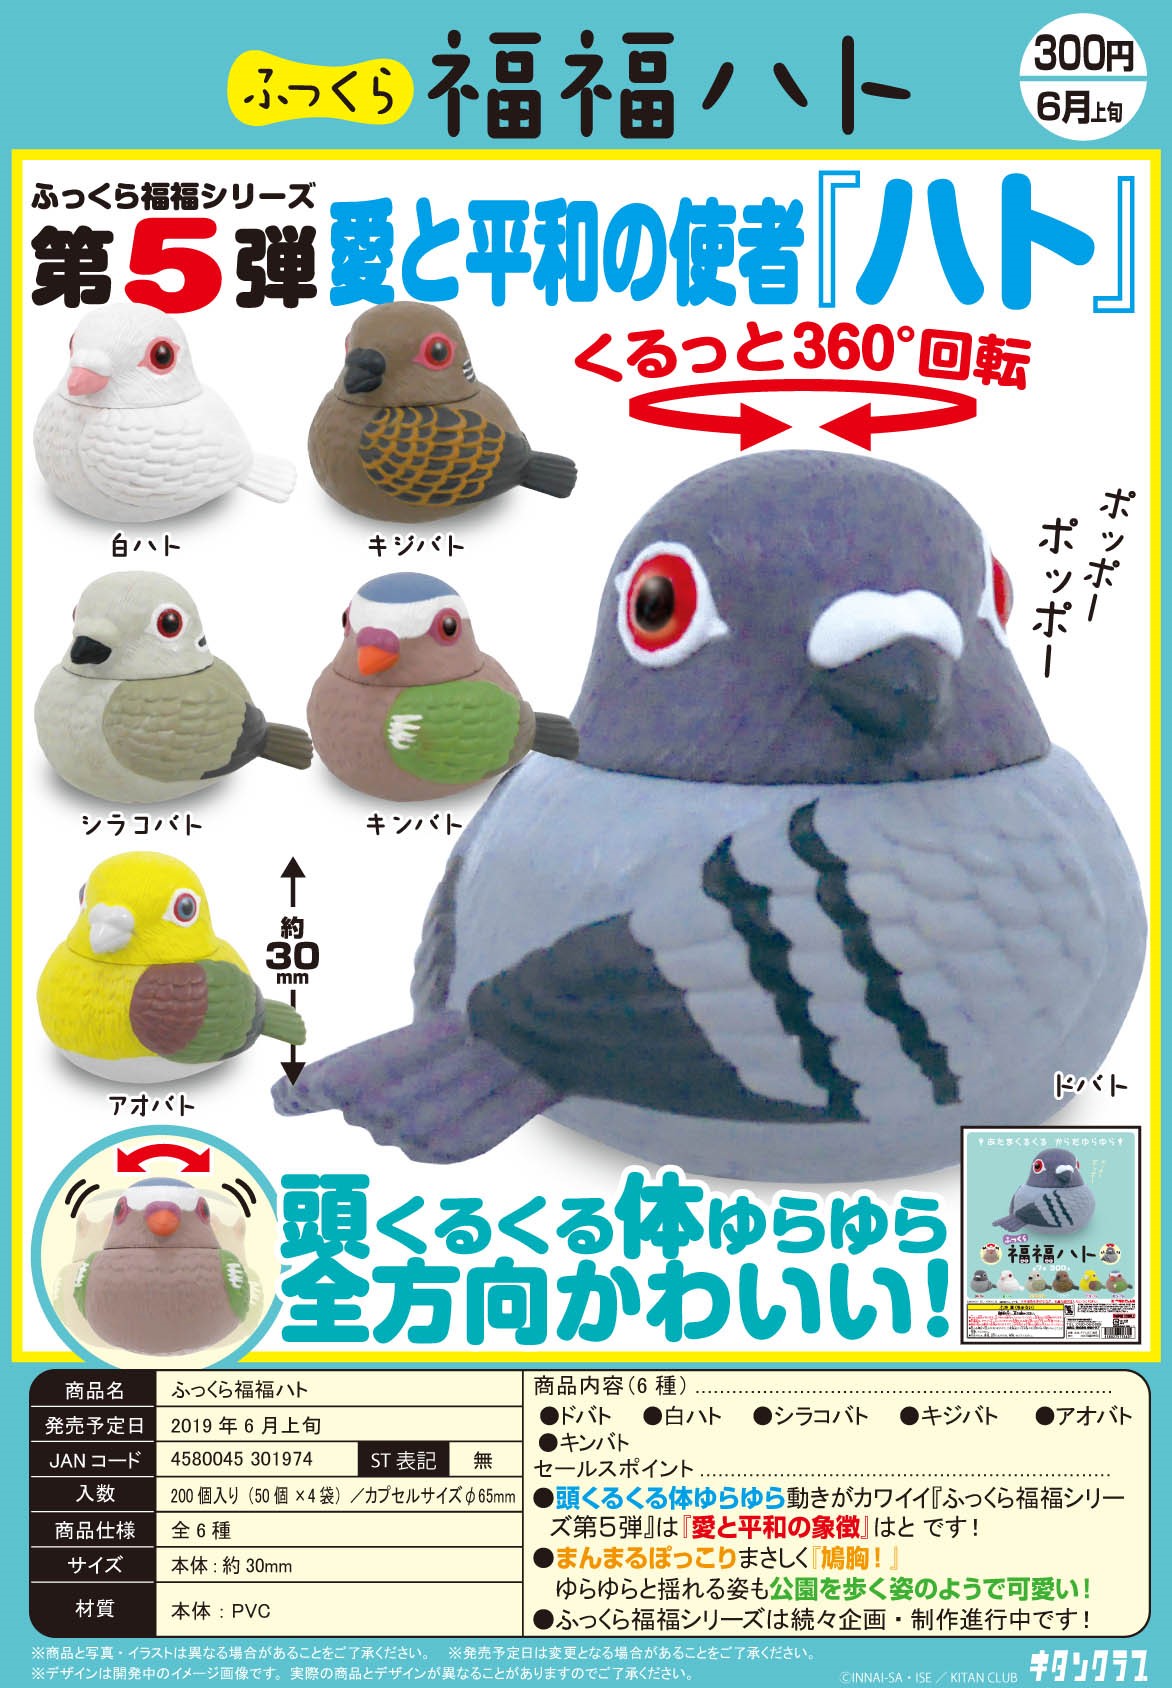 300日元扭蛋 可动小手办 福福系列 小鸽子 全6种 (1袋50个) 301974